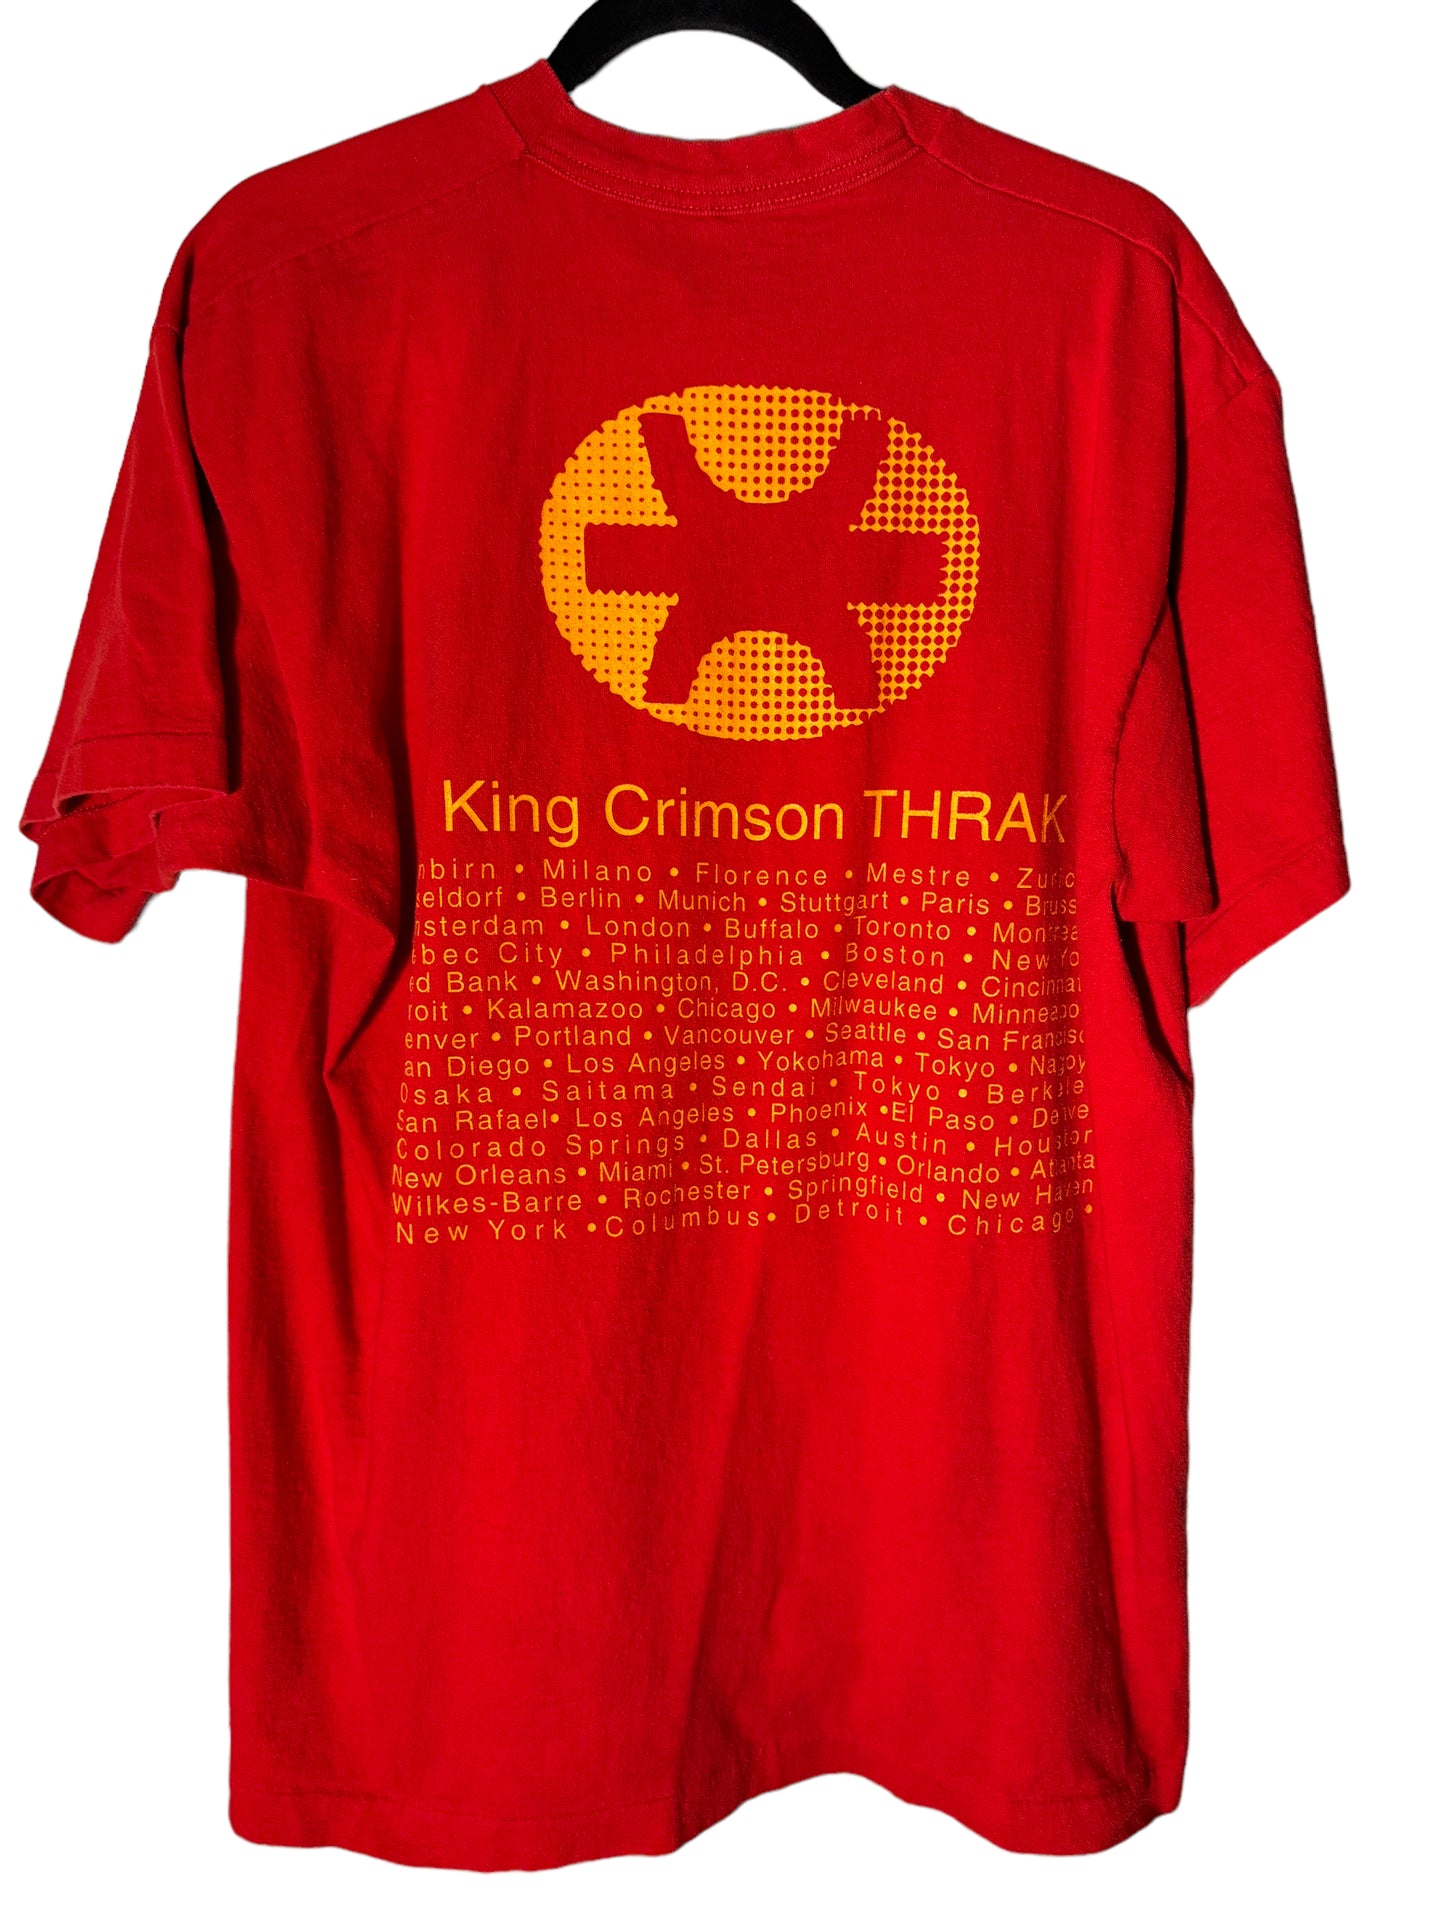 Vintage King Crimson Concert Shirt Vroom Tour 1990s